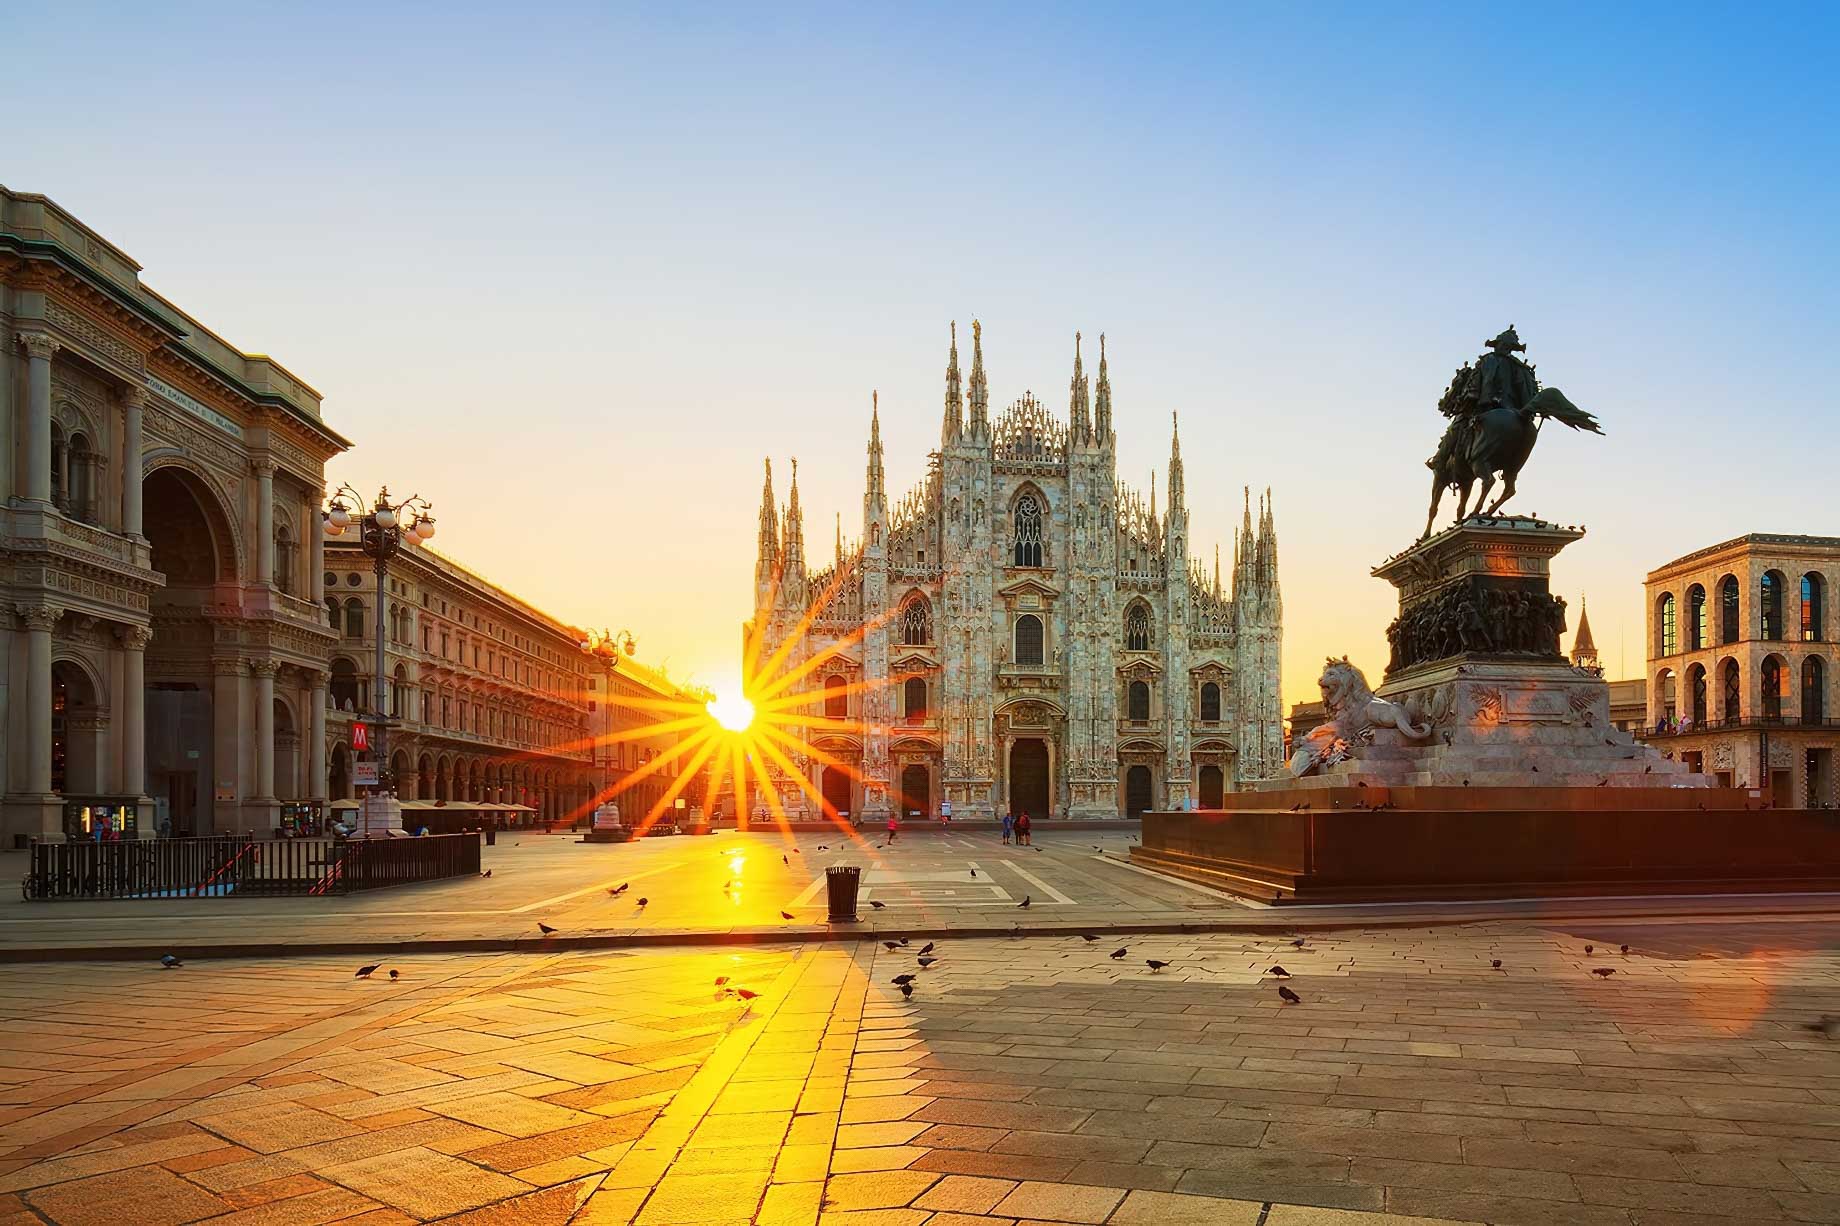 148 – Armani Hotel Milano – Milan, Italy – Milan Cathedral Sunset